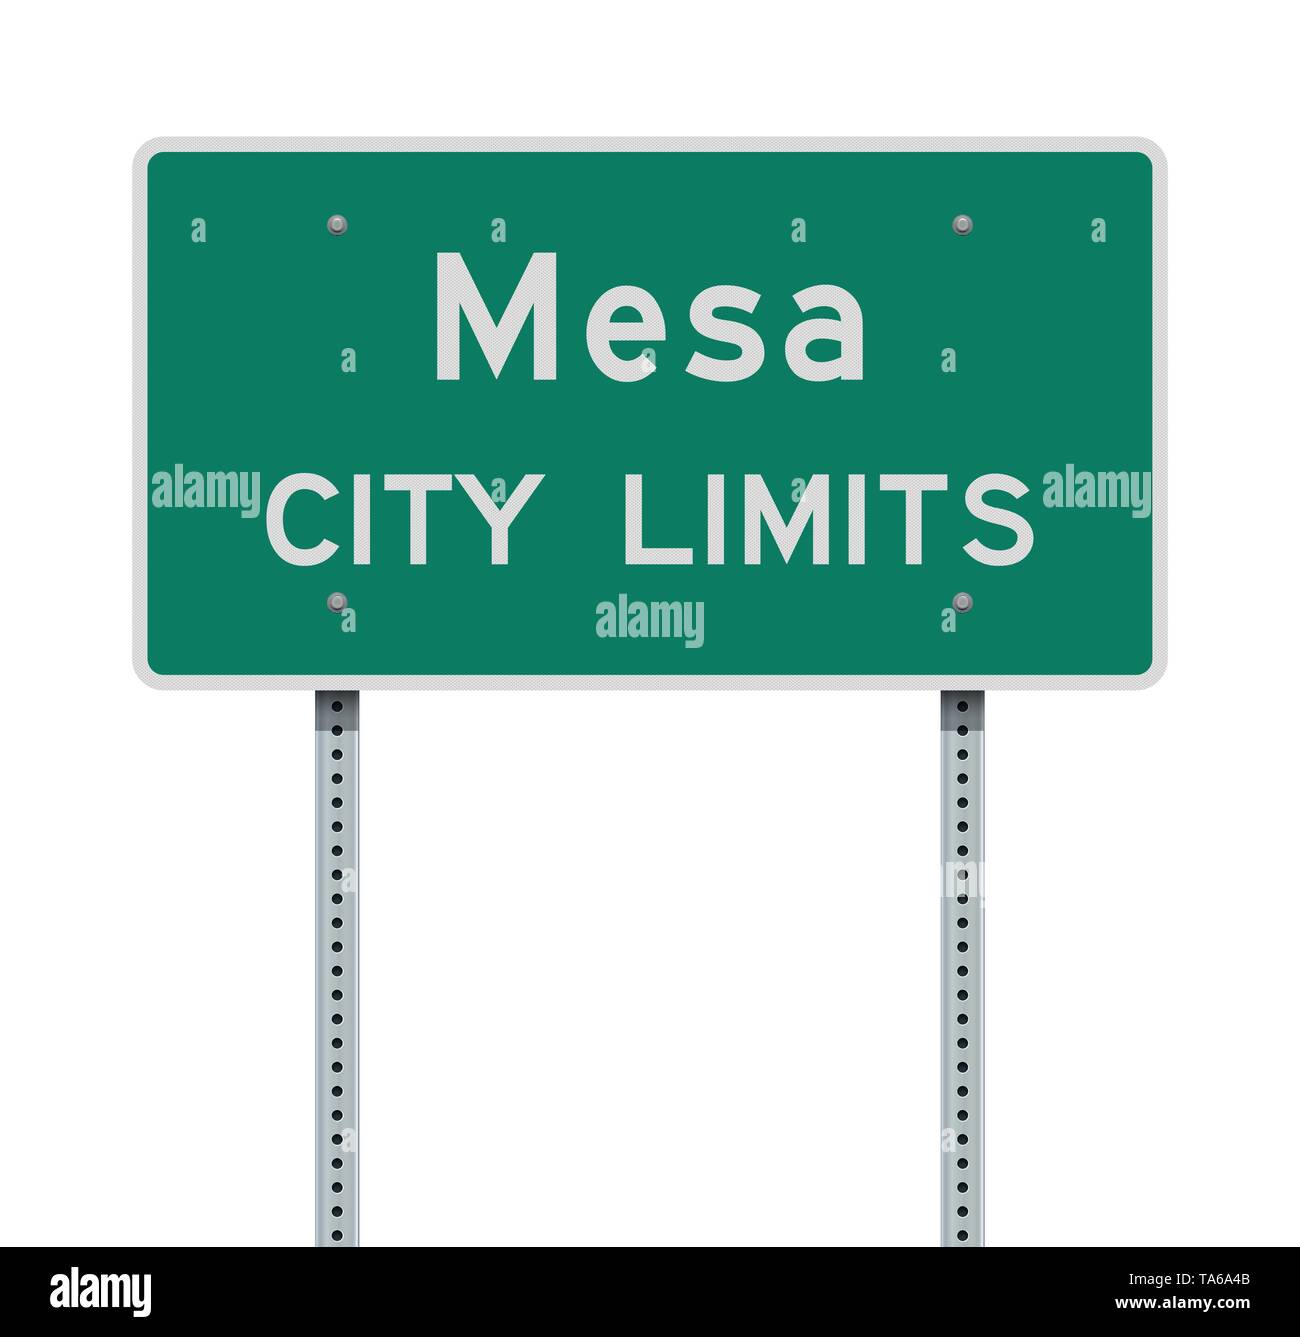 Vector illustration de la ville de Mesa panneau vert Illustration de Vecteur